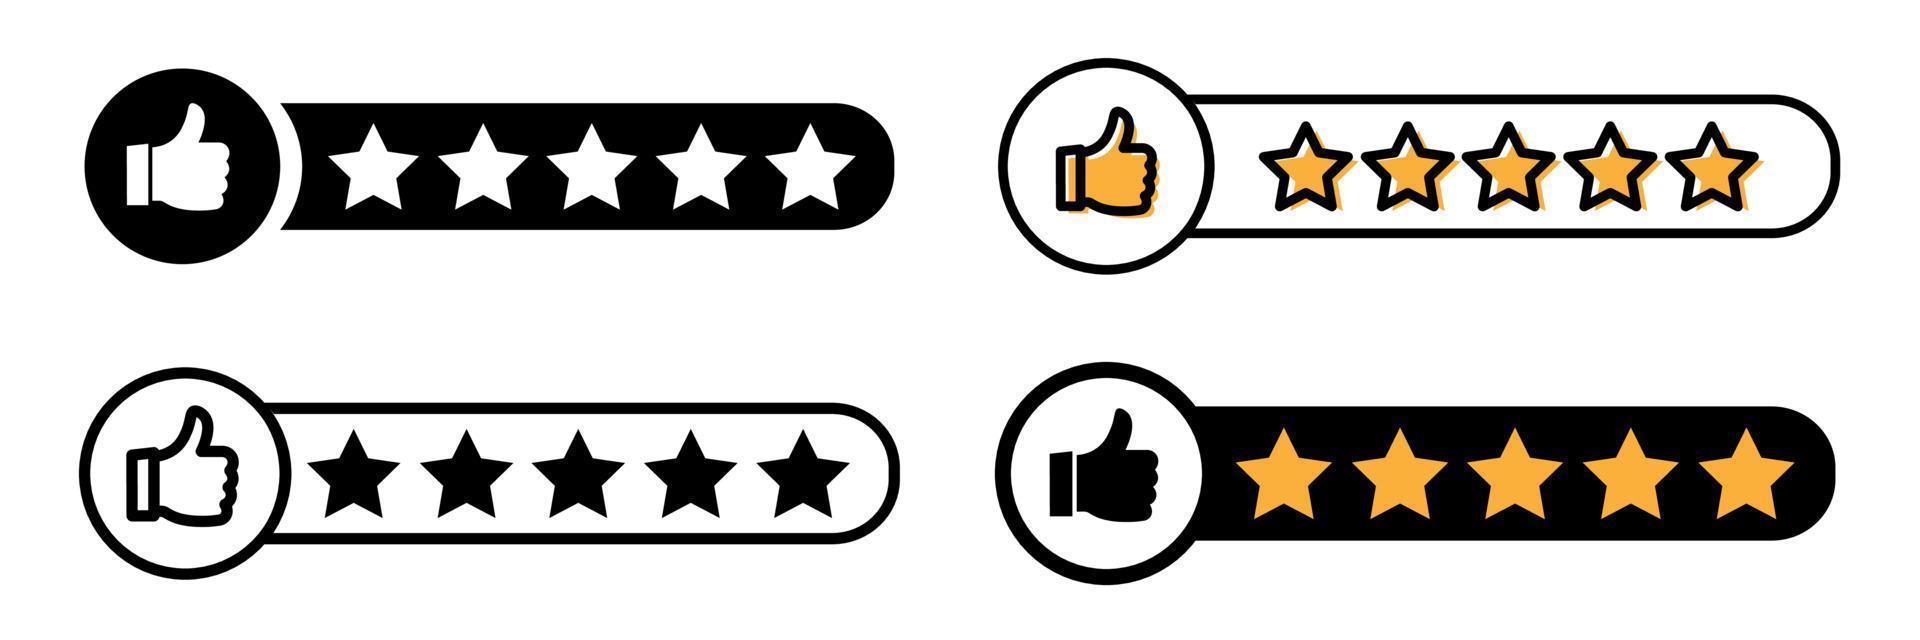 reputación 5 pulgares arriba icono de estrella. icono de revisión del cliente, evaluación de calidad, comentarios. ilustración vectorial aislada. vector